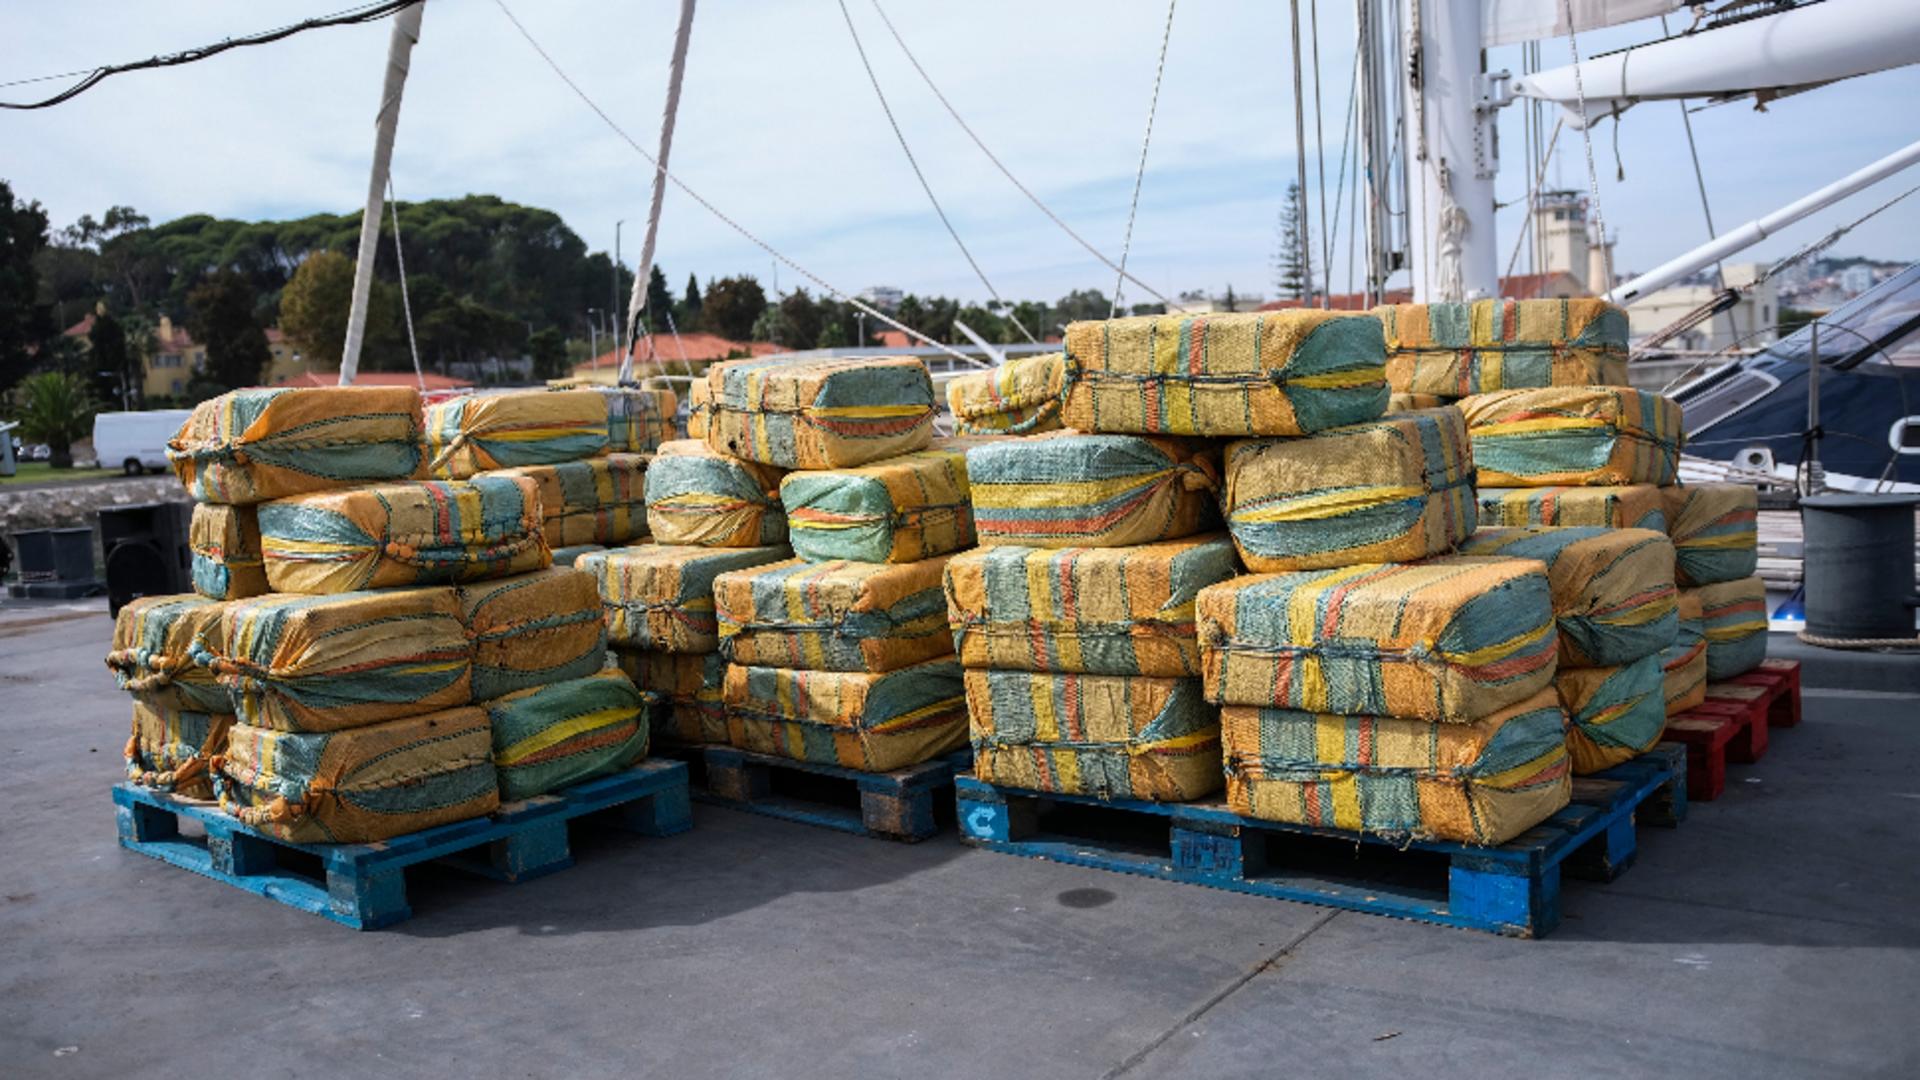 5,2 tone de droguri descoperite pe o ambarcațiune cu pânze. Foto/Profimedia